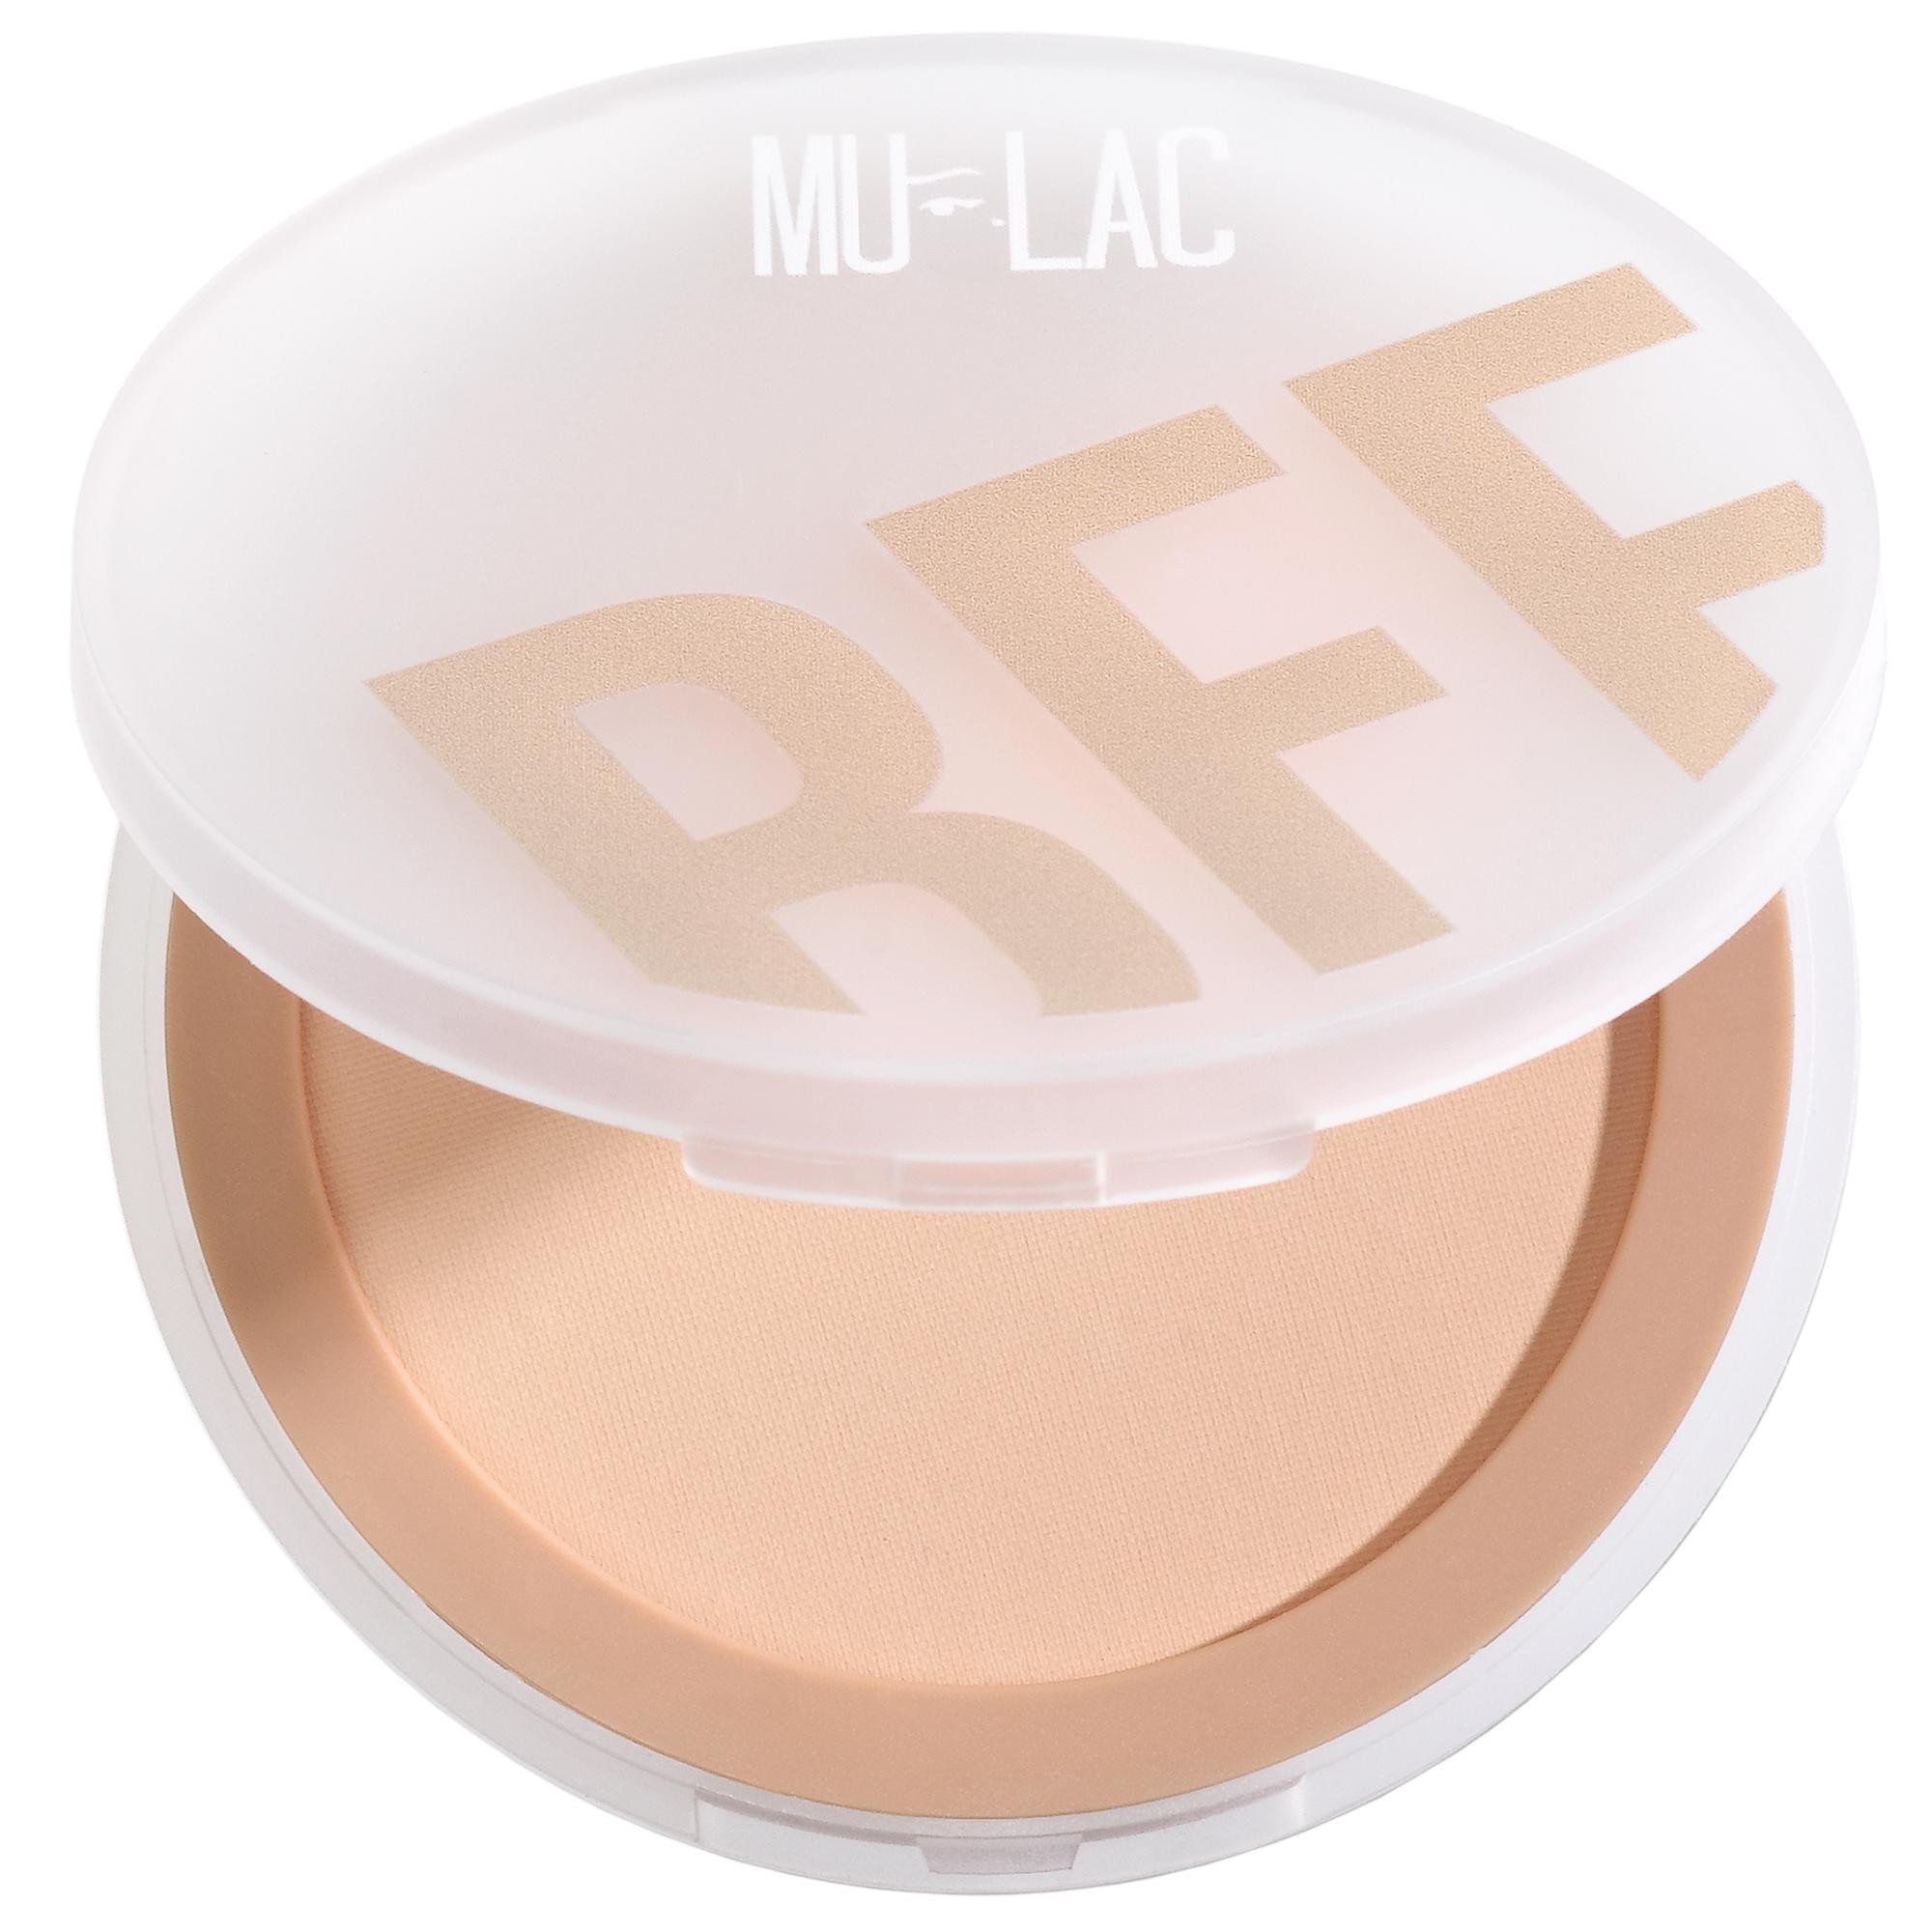 Mulac Cosmetics Bff Pressed Powder 02 Medium 7.5g